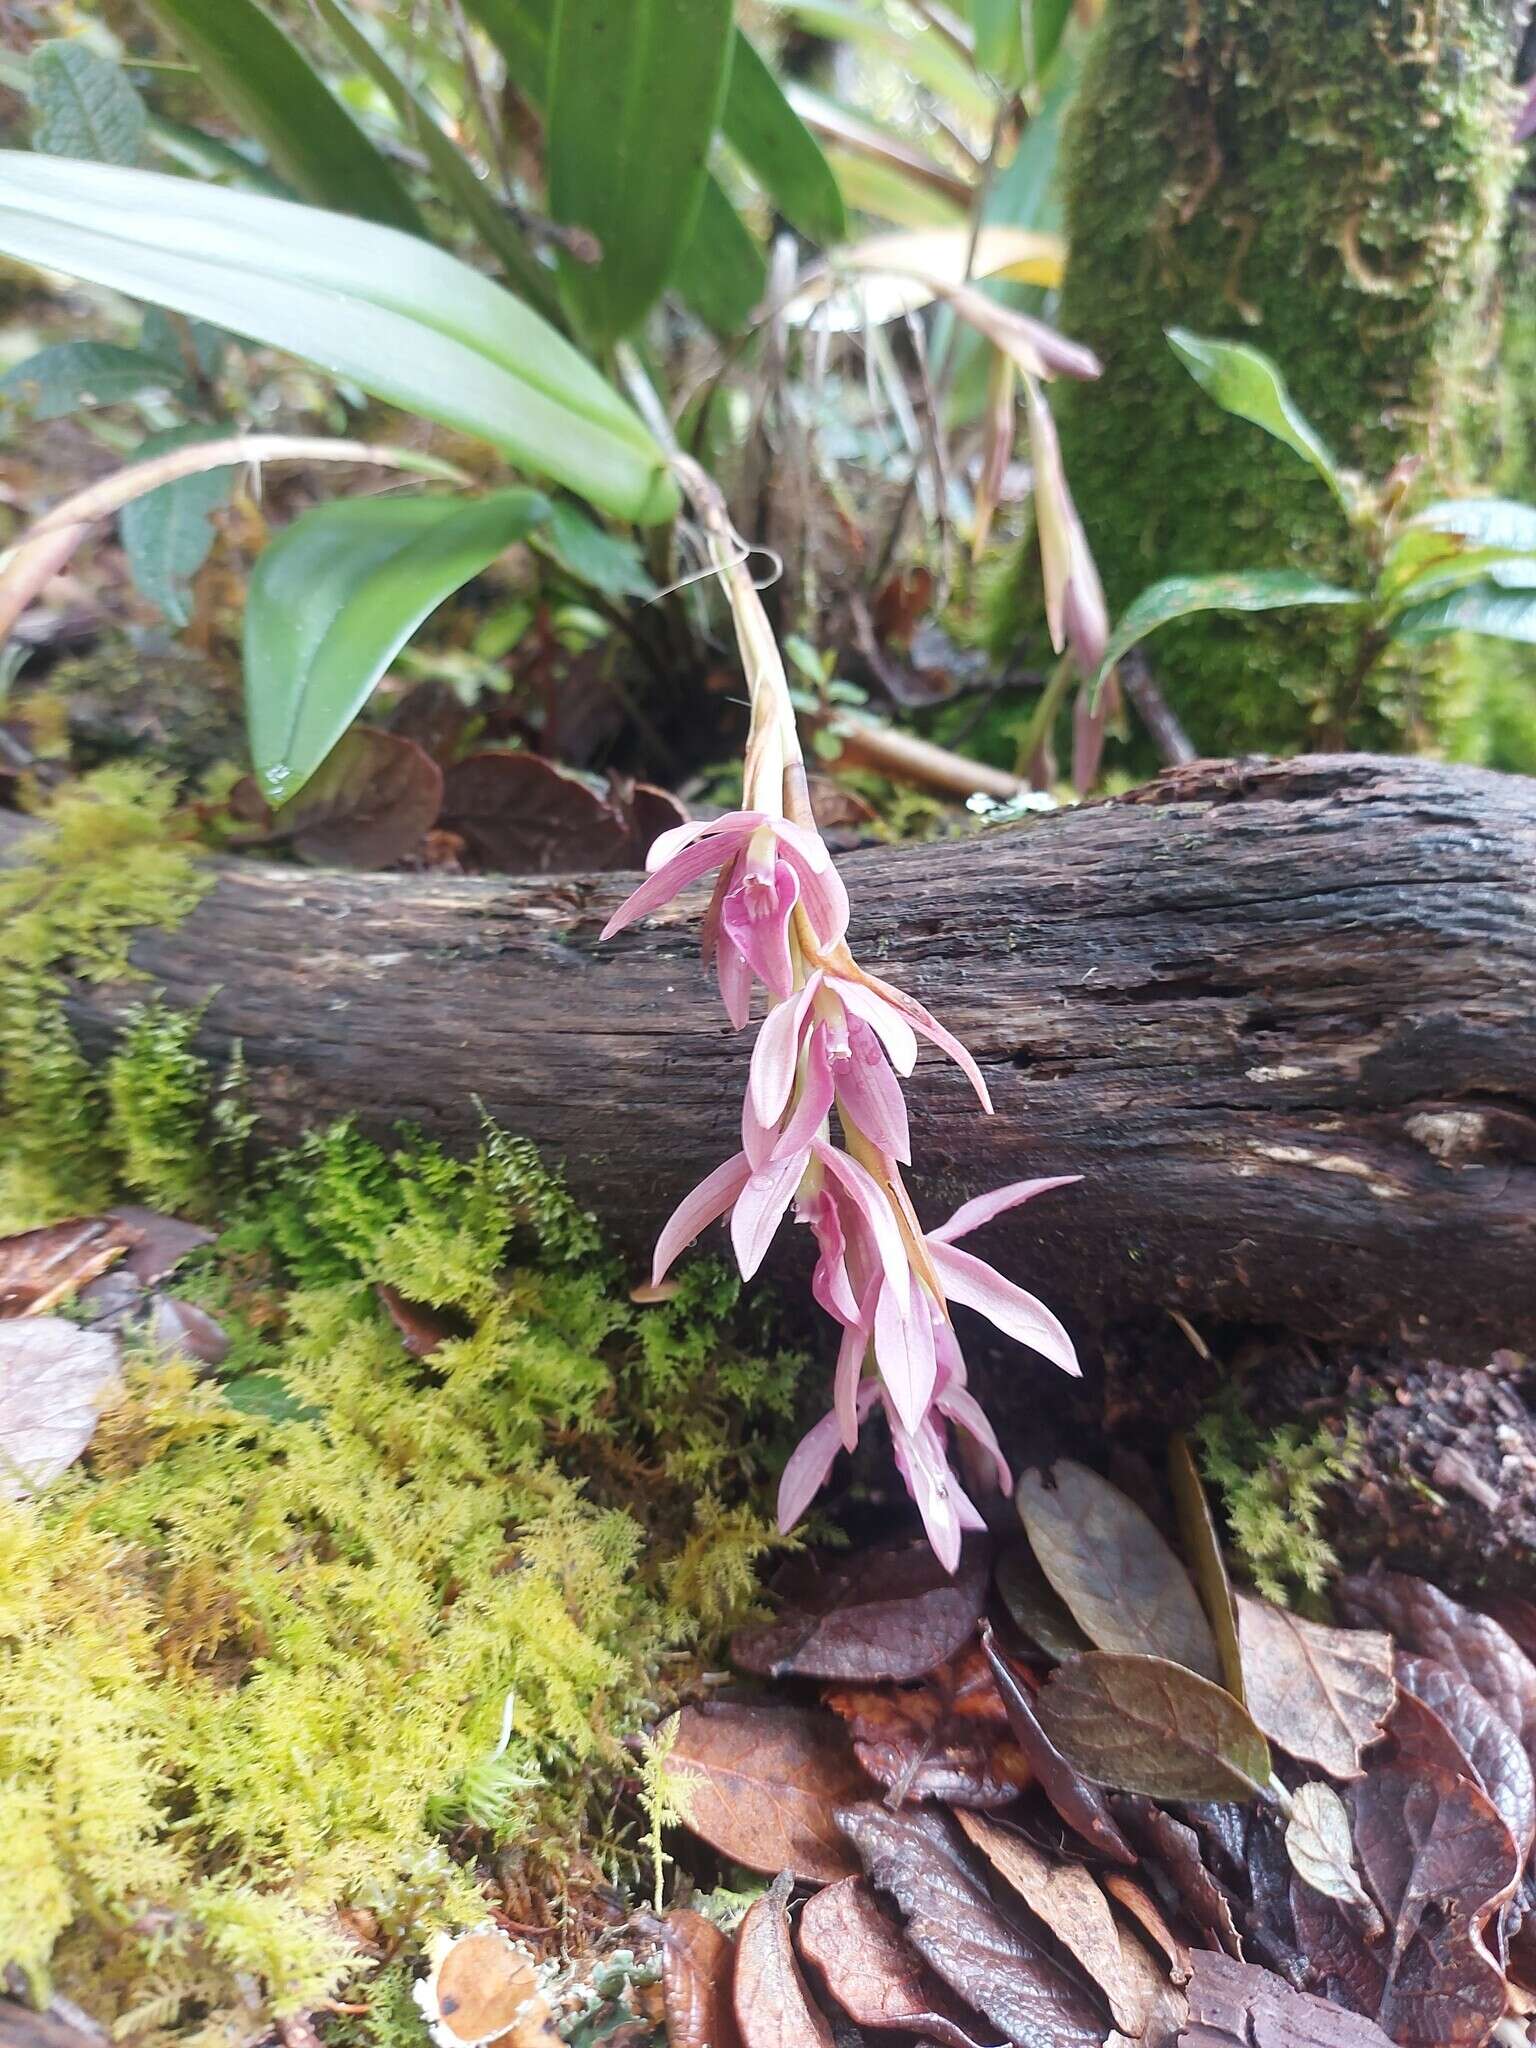 Image of Epidendrum paucifolium Schltr.